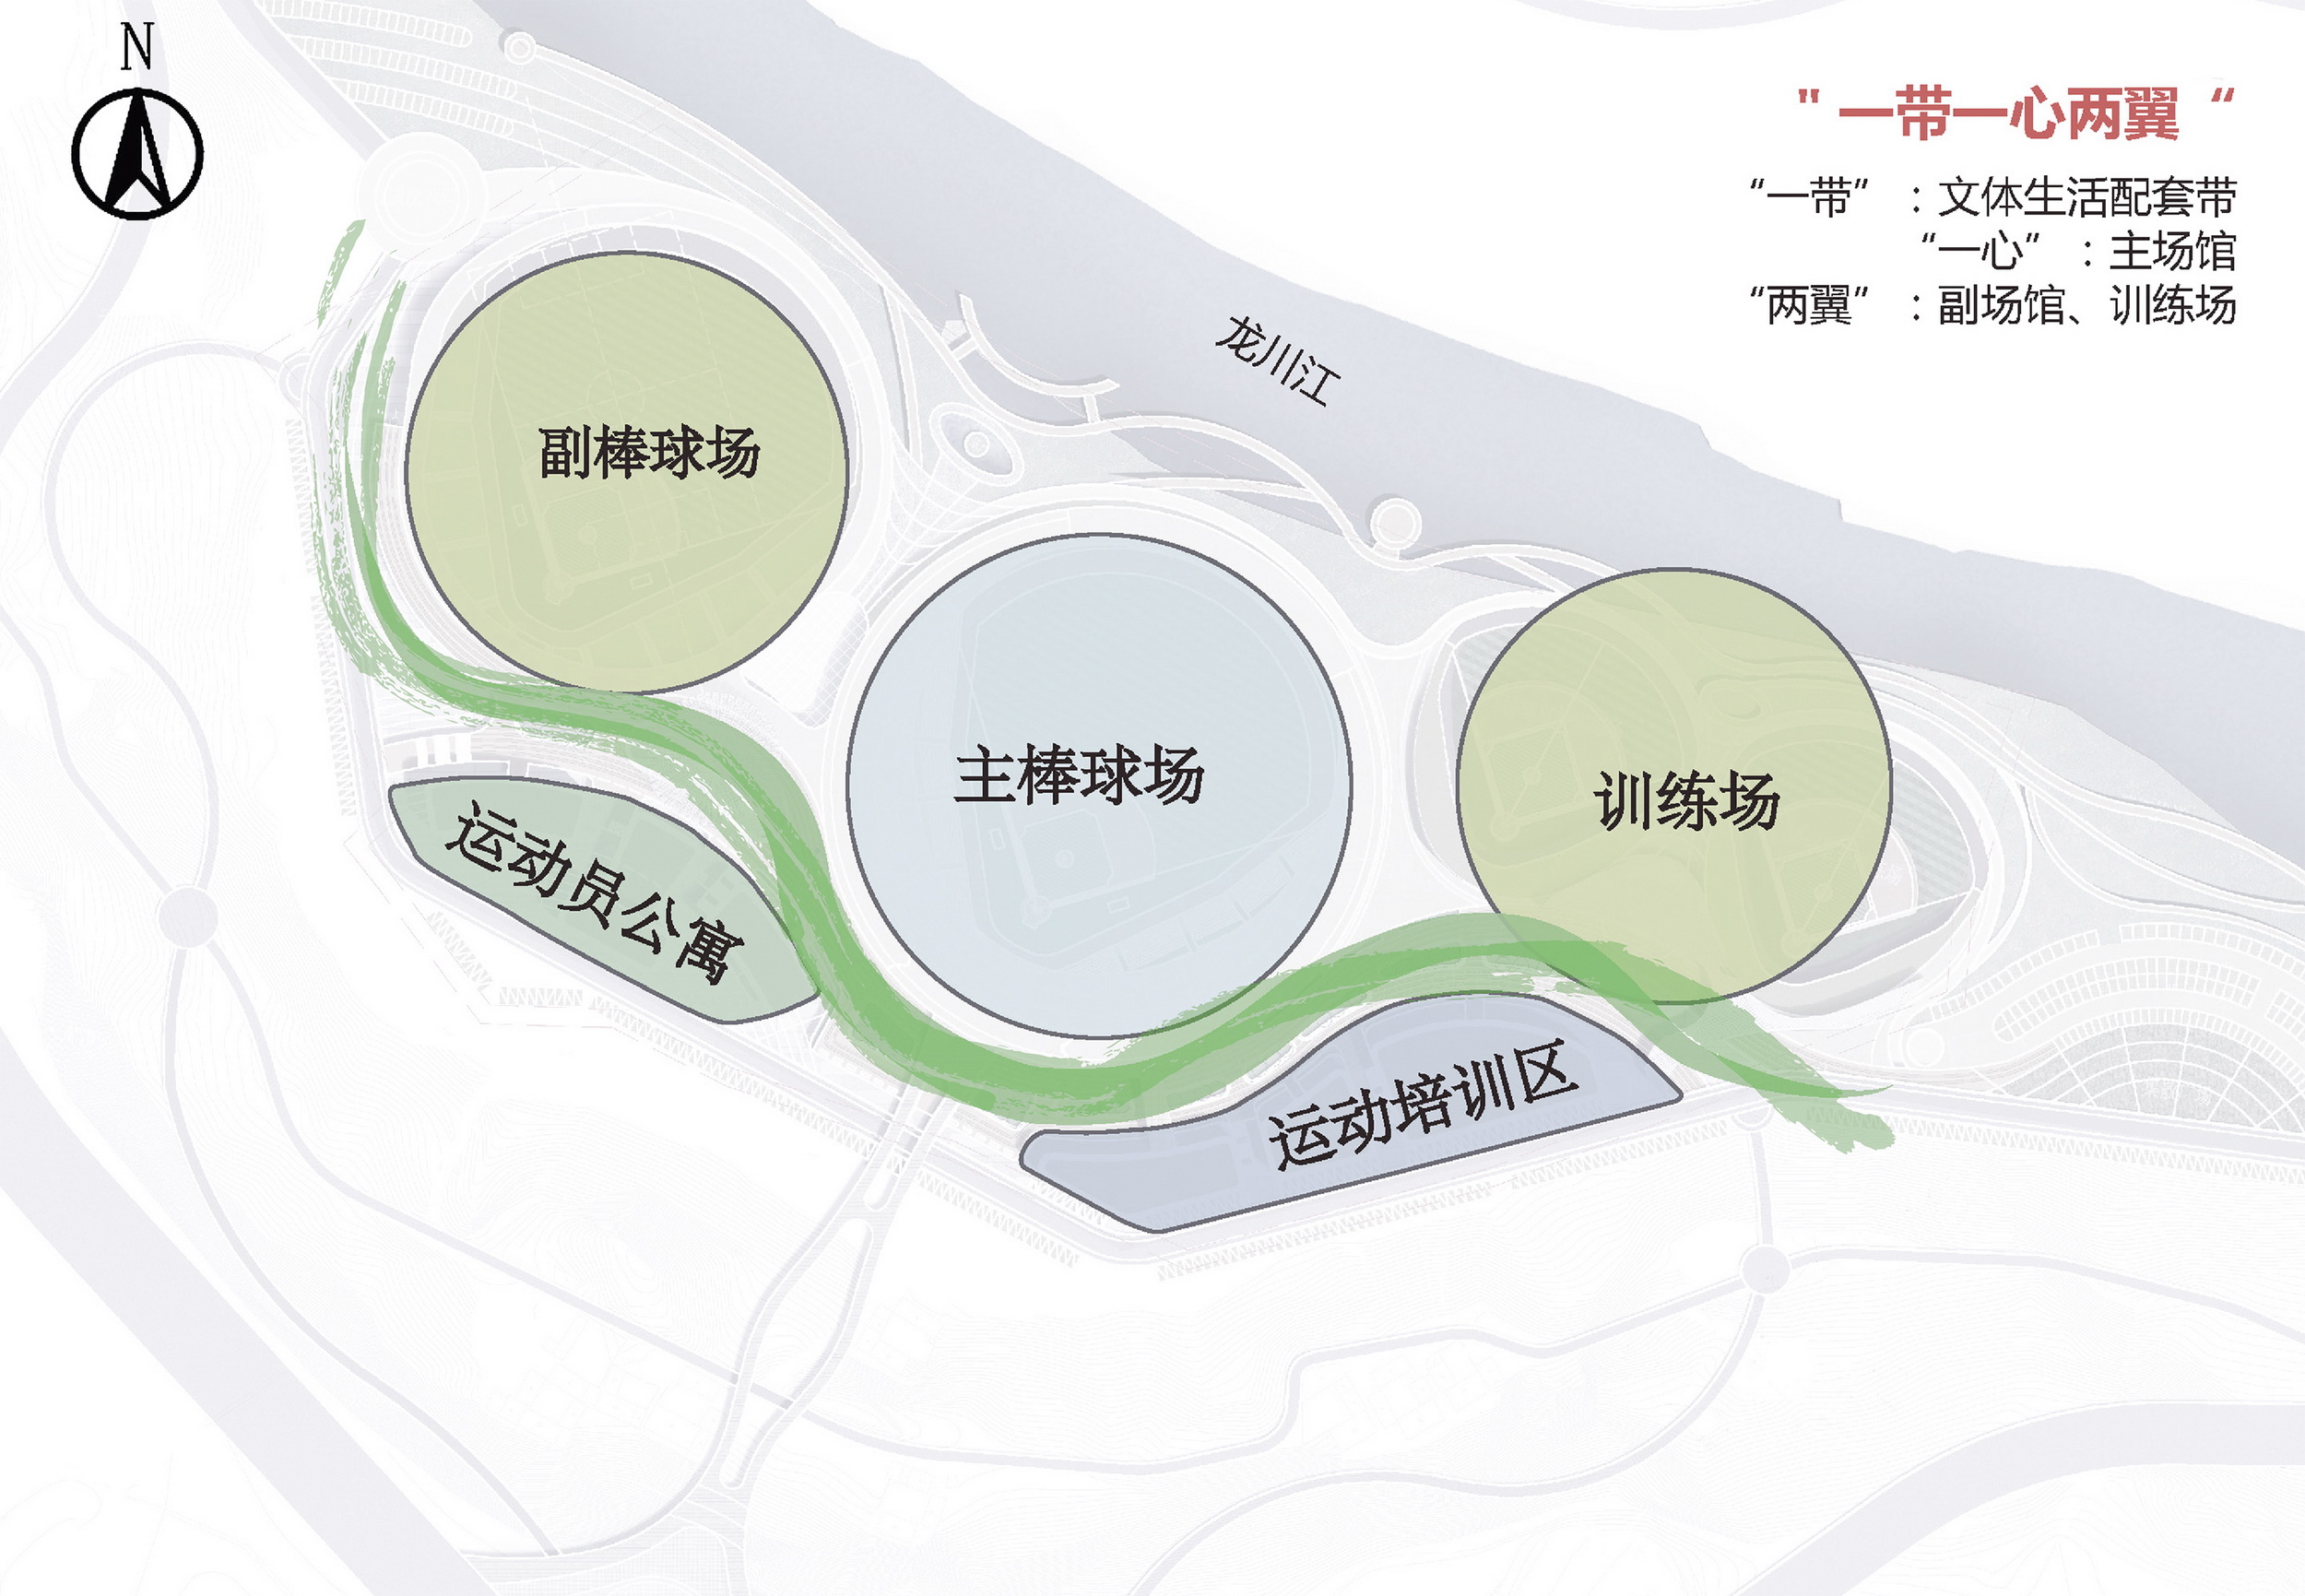 腾冲国际棒球运动公园 建筑设计 / 深圳中海世纪建筑设计有限公司